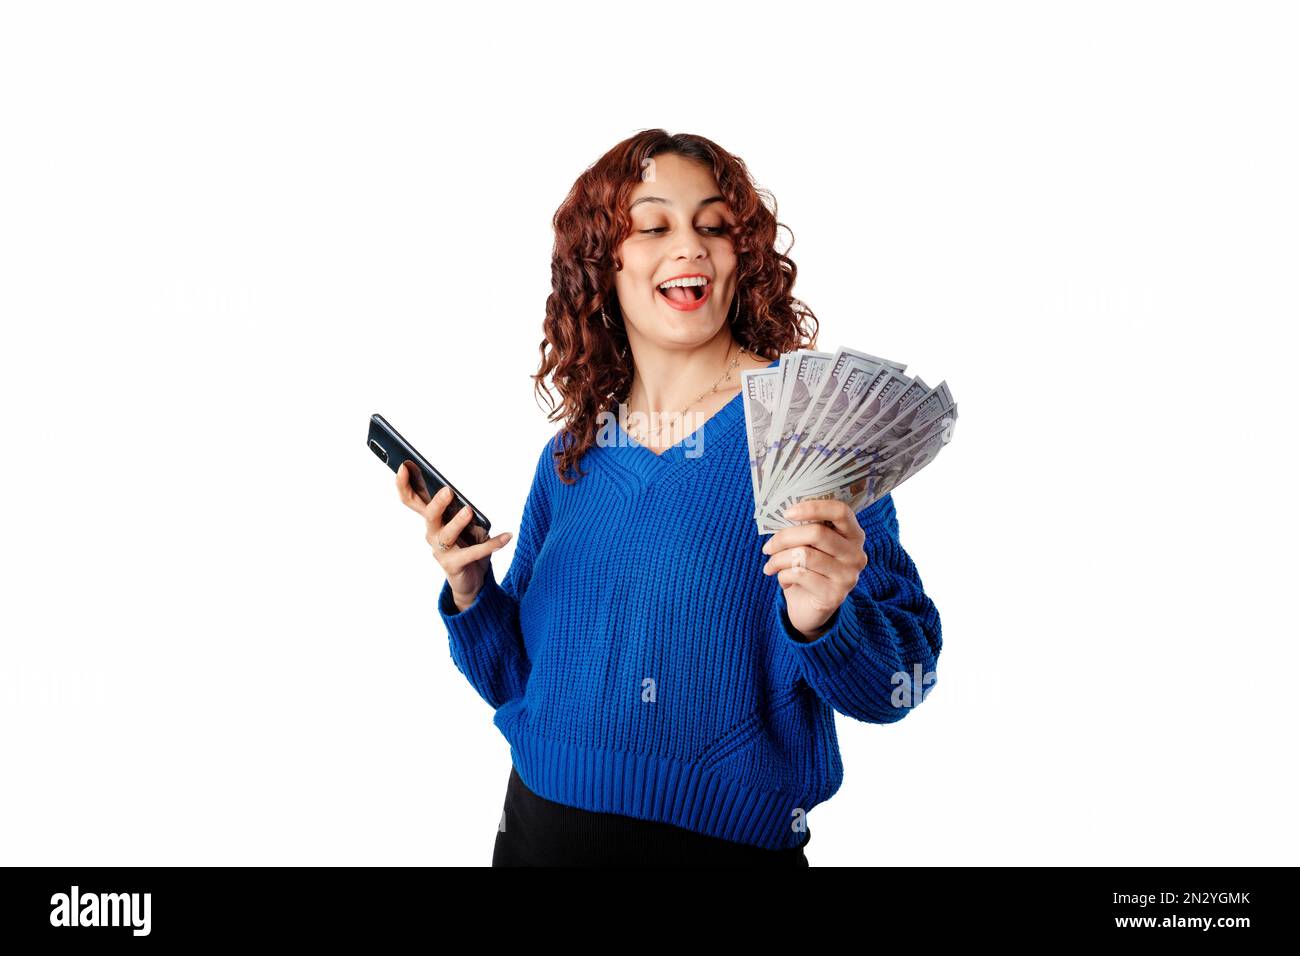 Porträt einer jungen Frau mit blauem Strickpullover, die isoliert auf weißem Hintergrund steht und Geldscheine mit dem Handy hält. Bunc wird angezeigt Stockfoto